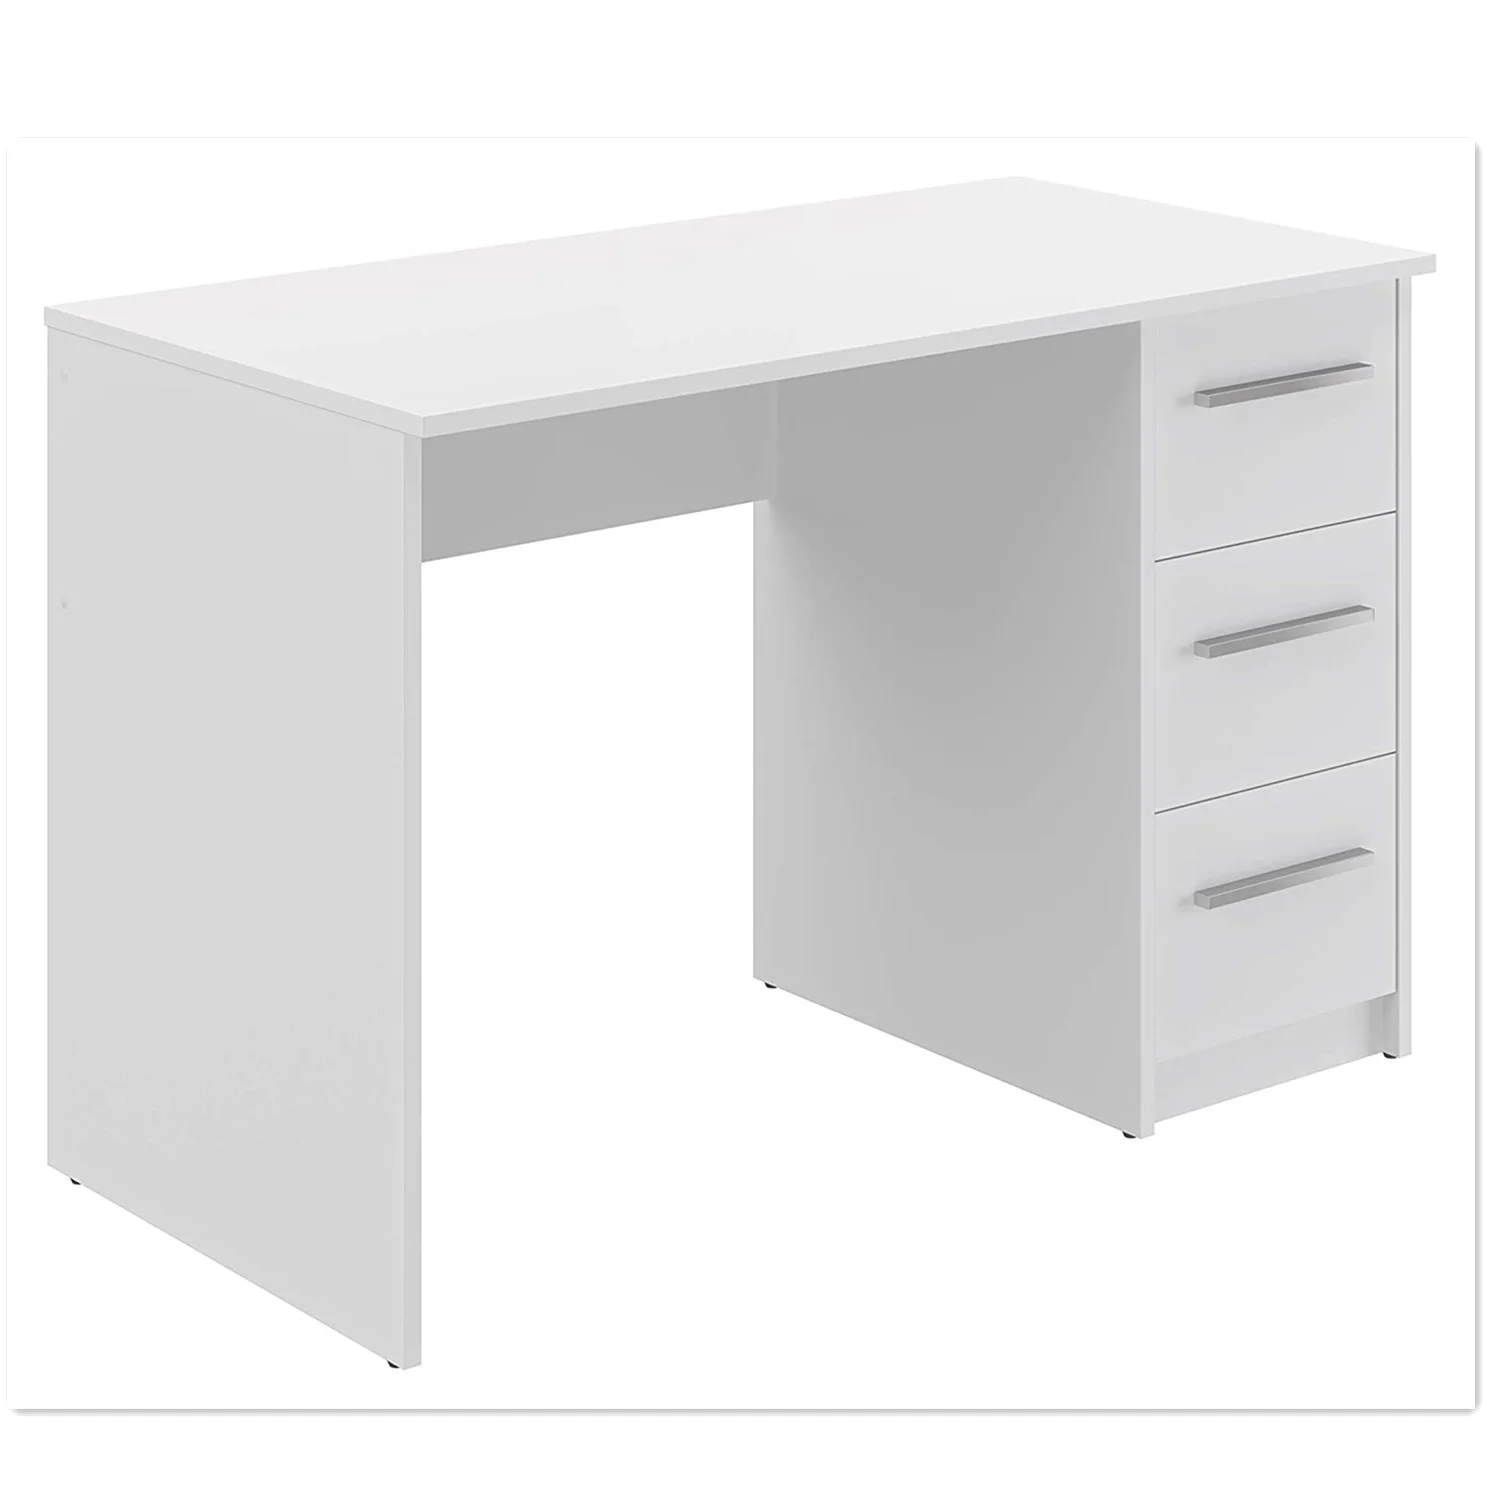 Стол высотой 100 см. Письменный стол икеа 120 на 60 белый. Компьютерный стол Skyland CD 7045, 70х45х75 см. Белый письменный стол МД66.6.150. Стол письменный White Club Snake 150x70cm.